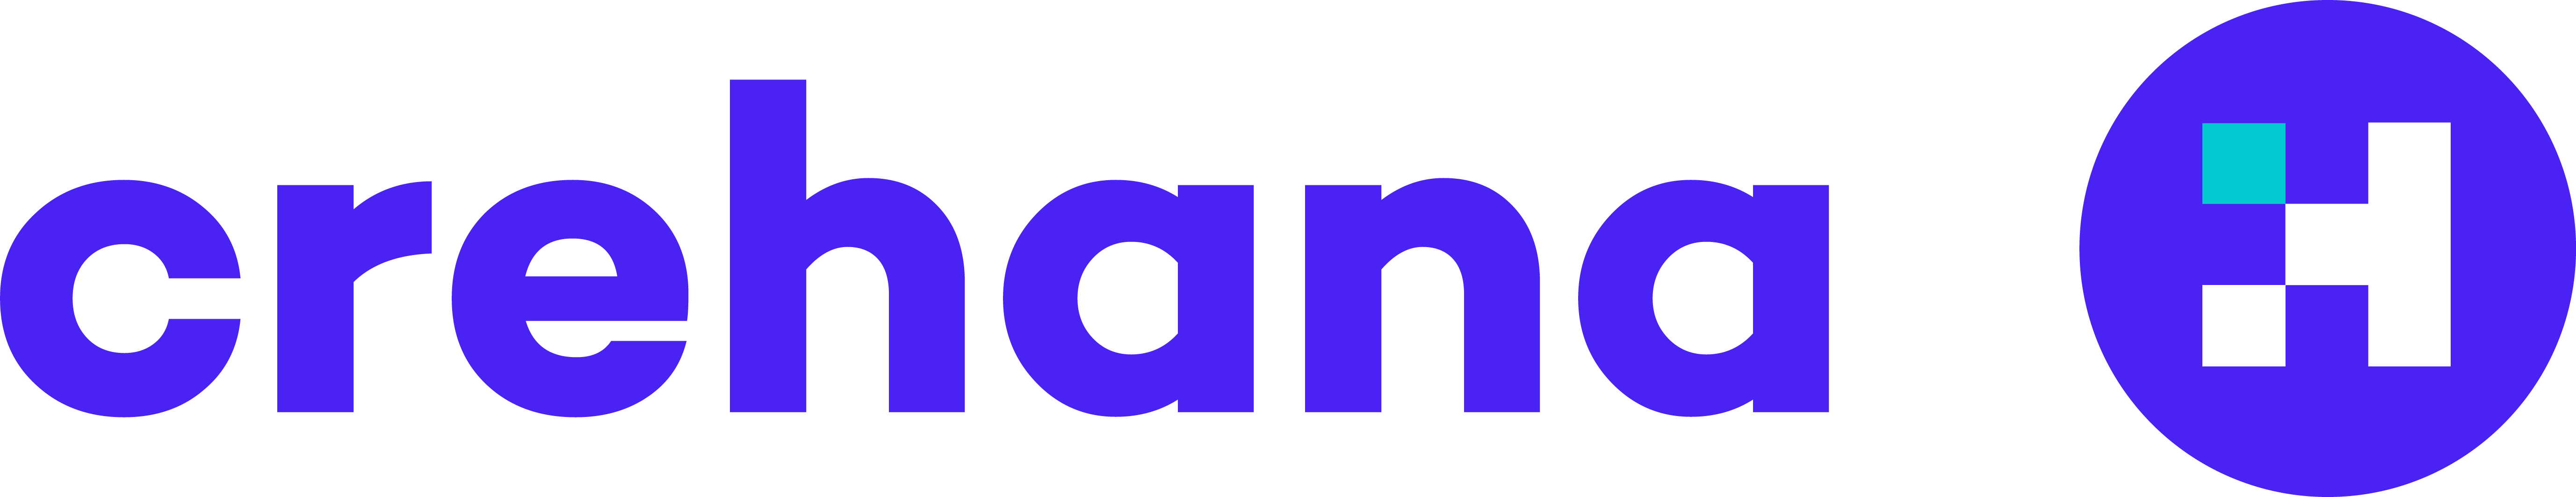 Crehana Logo